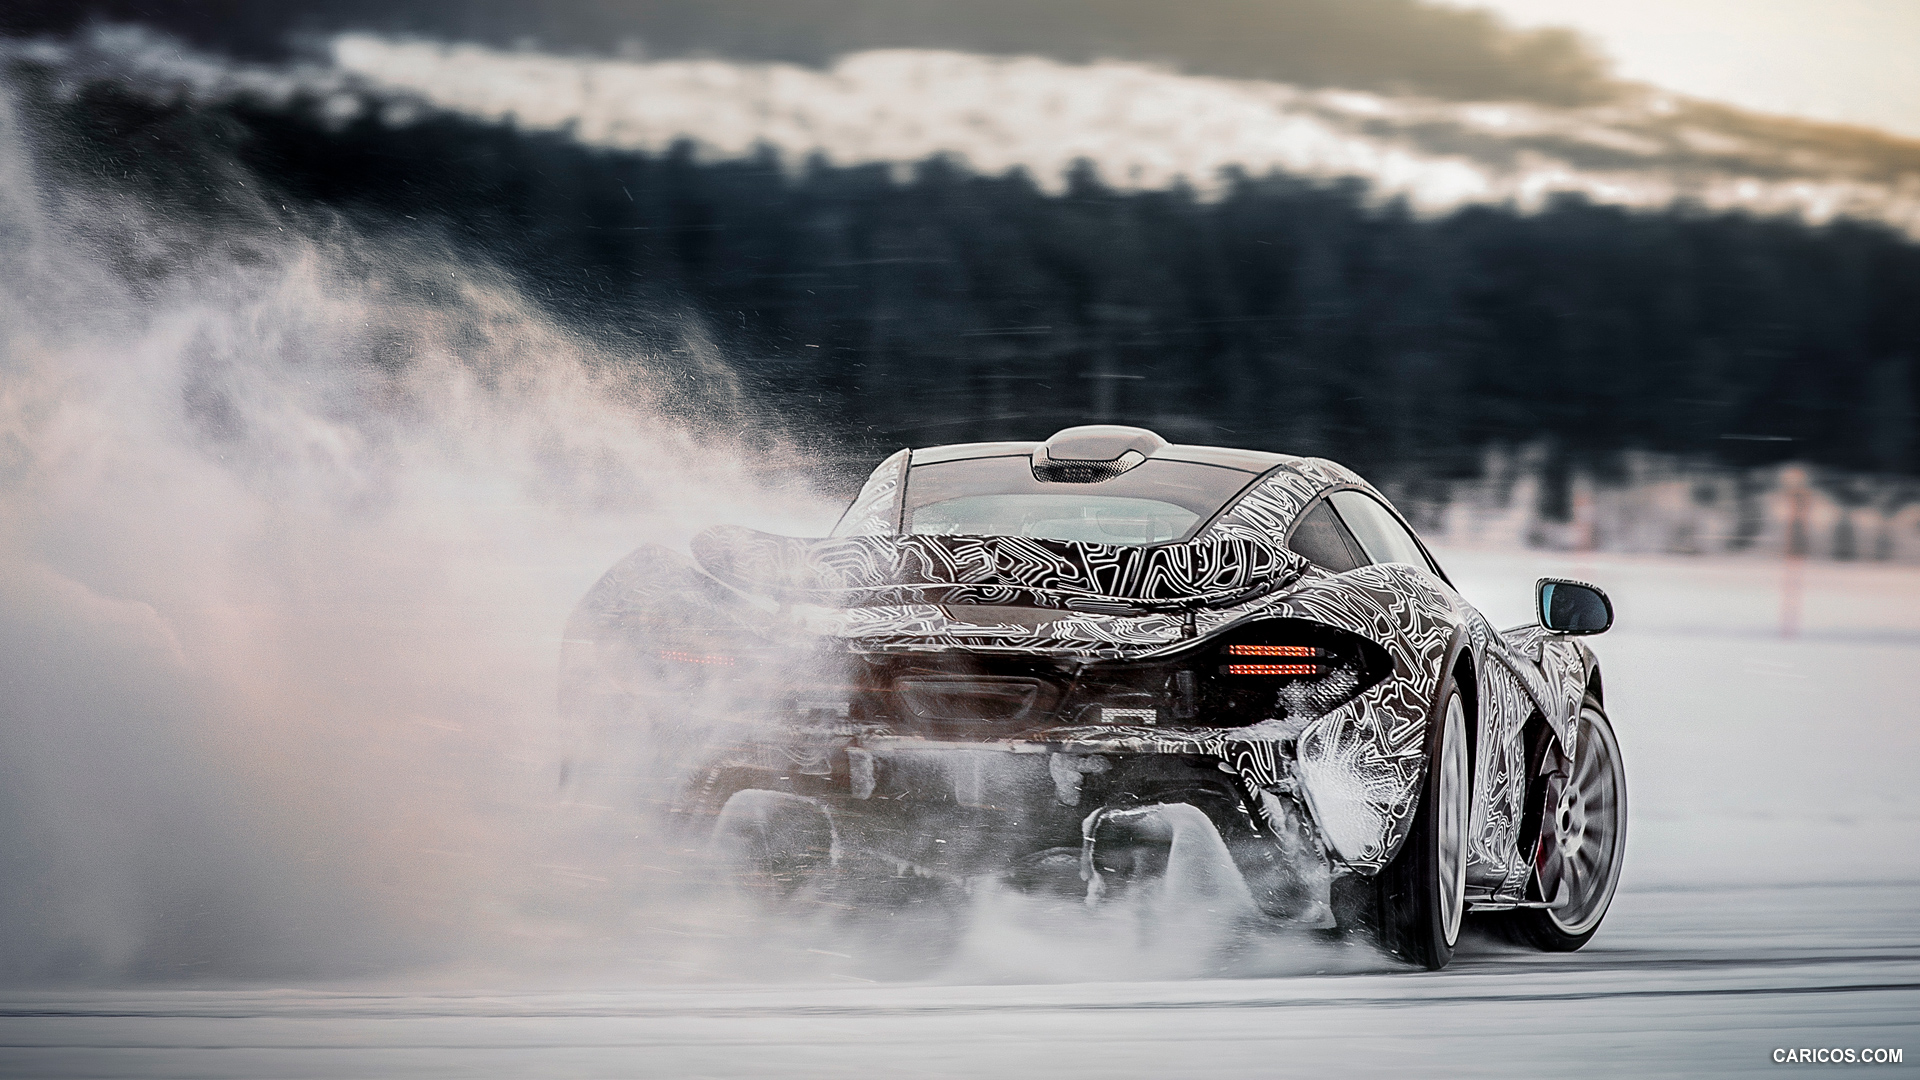 2014 McLaren P1 - In Snow - Rear, #78 of 126